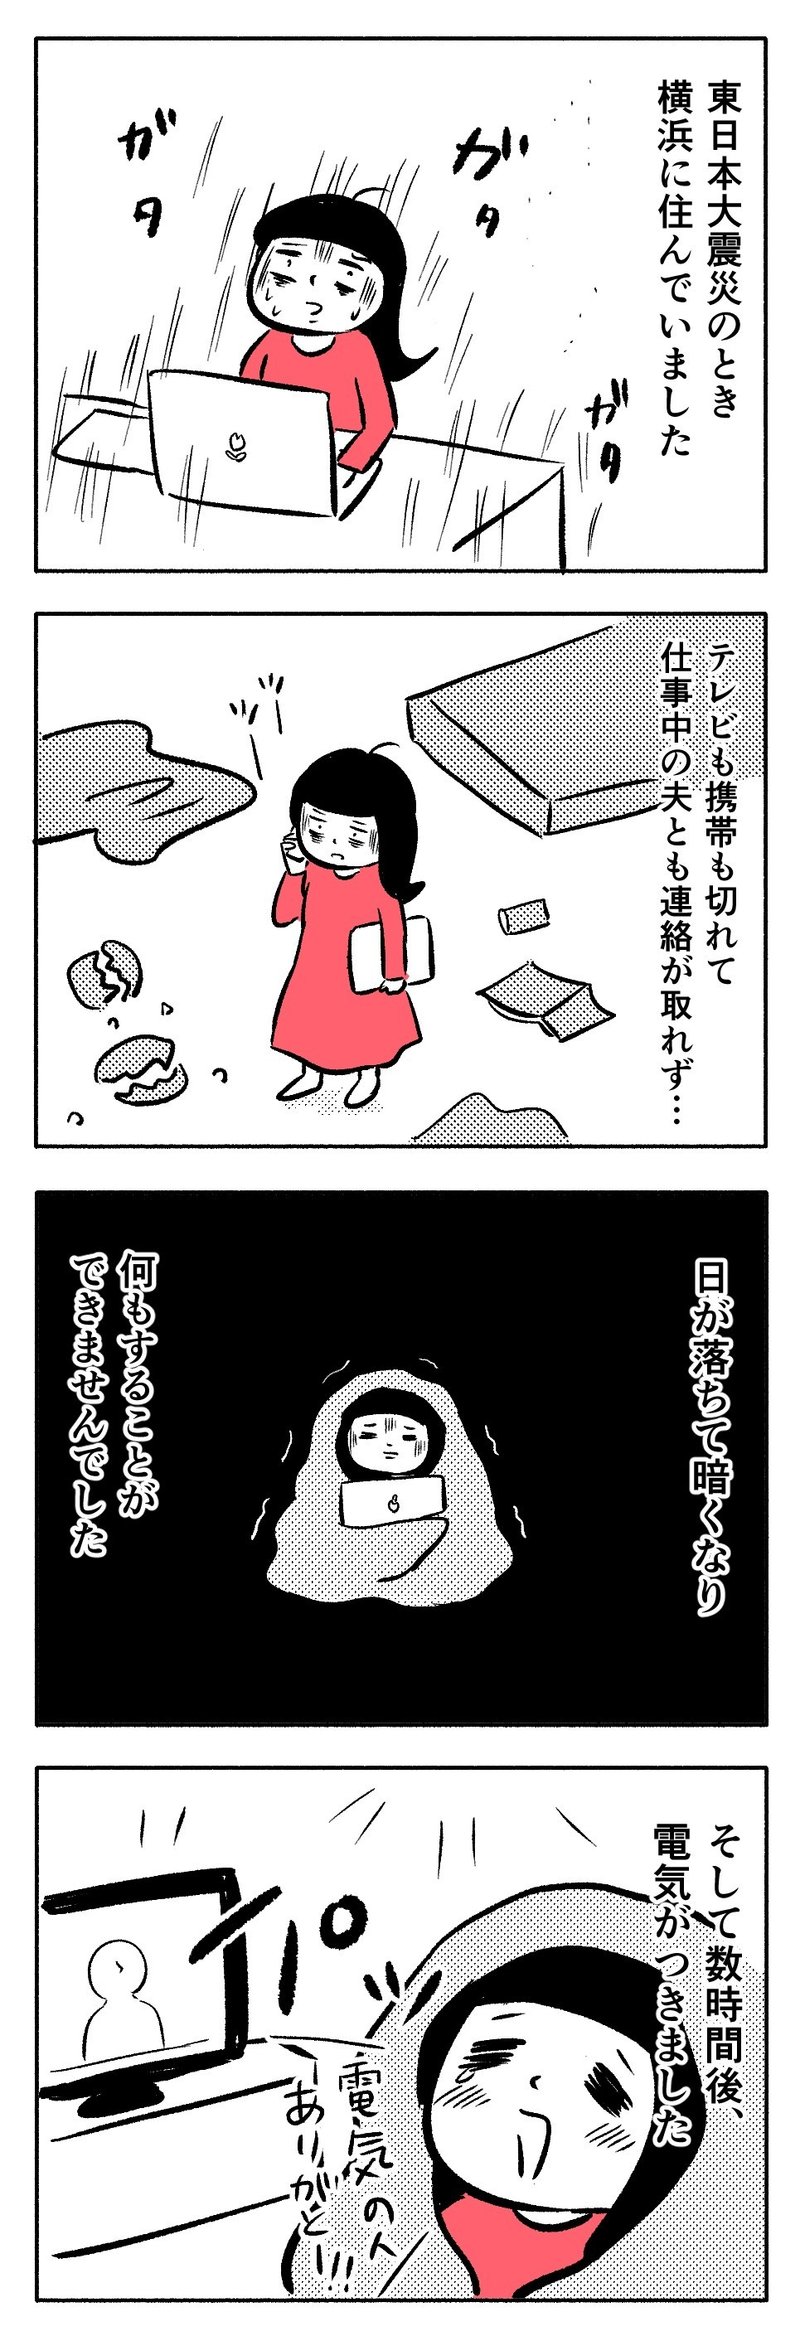 漫画 社会を守る人たち 東日本大震災の話 カワグチマサミ エッセイ漫画家 Note